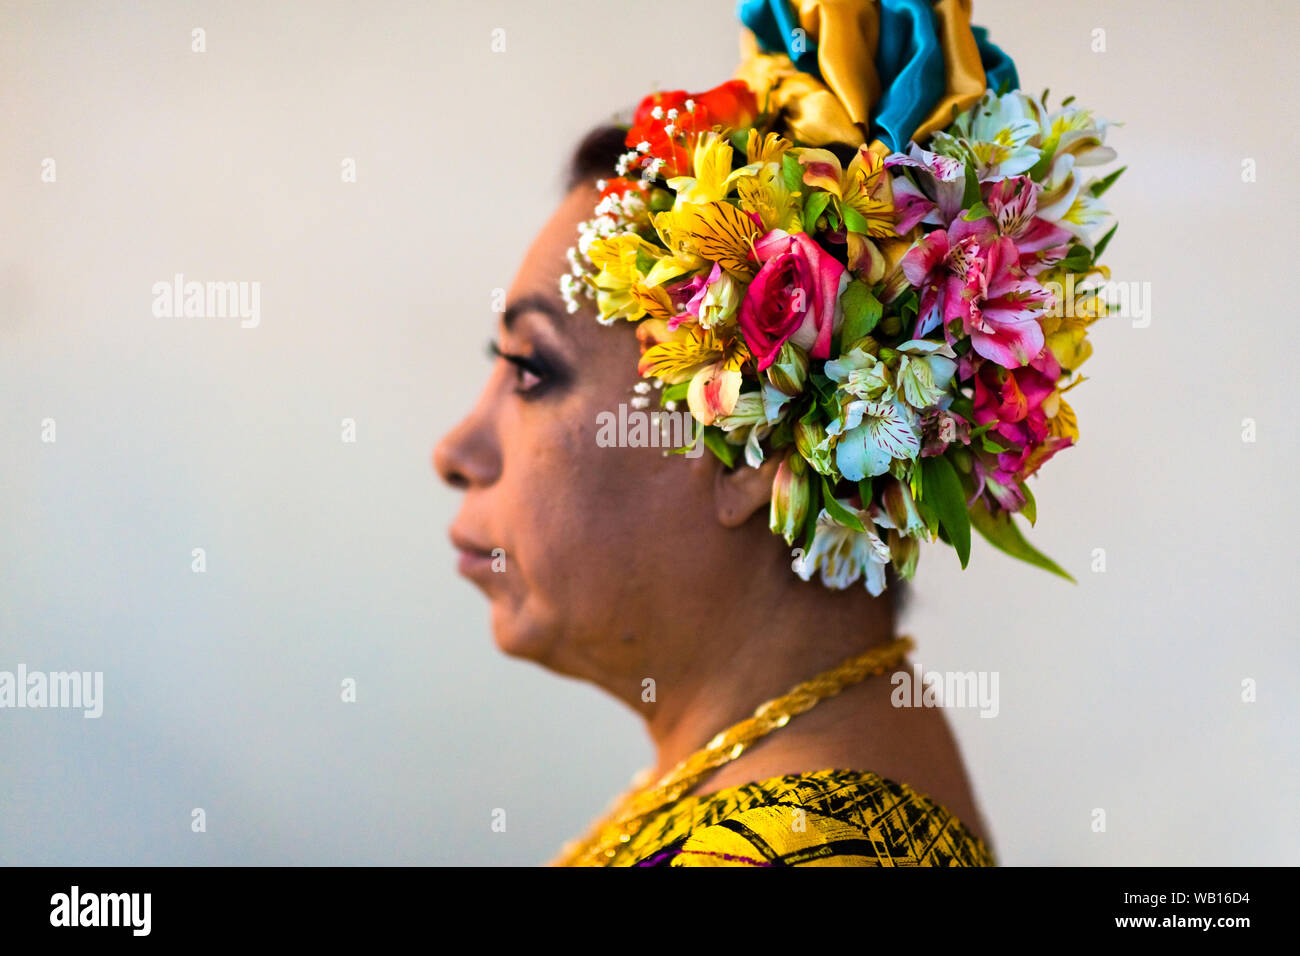 Un Mexicain "muxe" (typiquement, un homosexuel homme portant les vêtements féminins) vérifie sur un bandeau pendant le festival à Juchitán de Zaragoza, Mexique. Banque D'Images